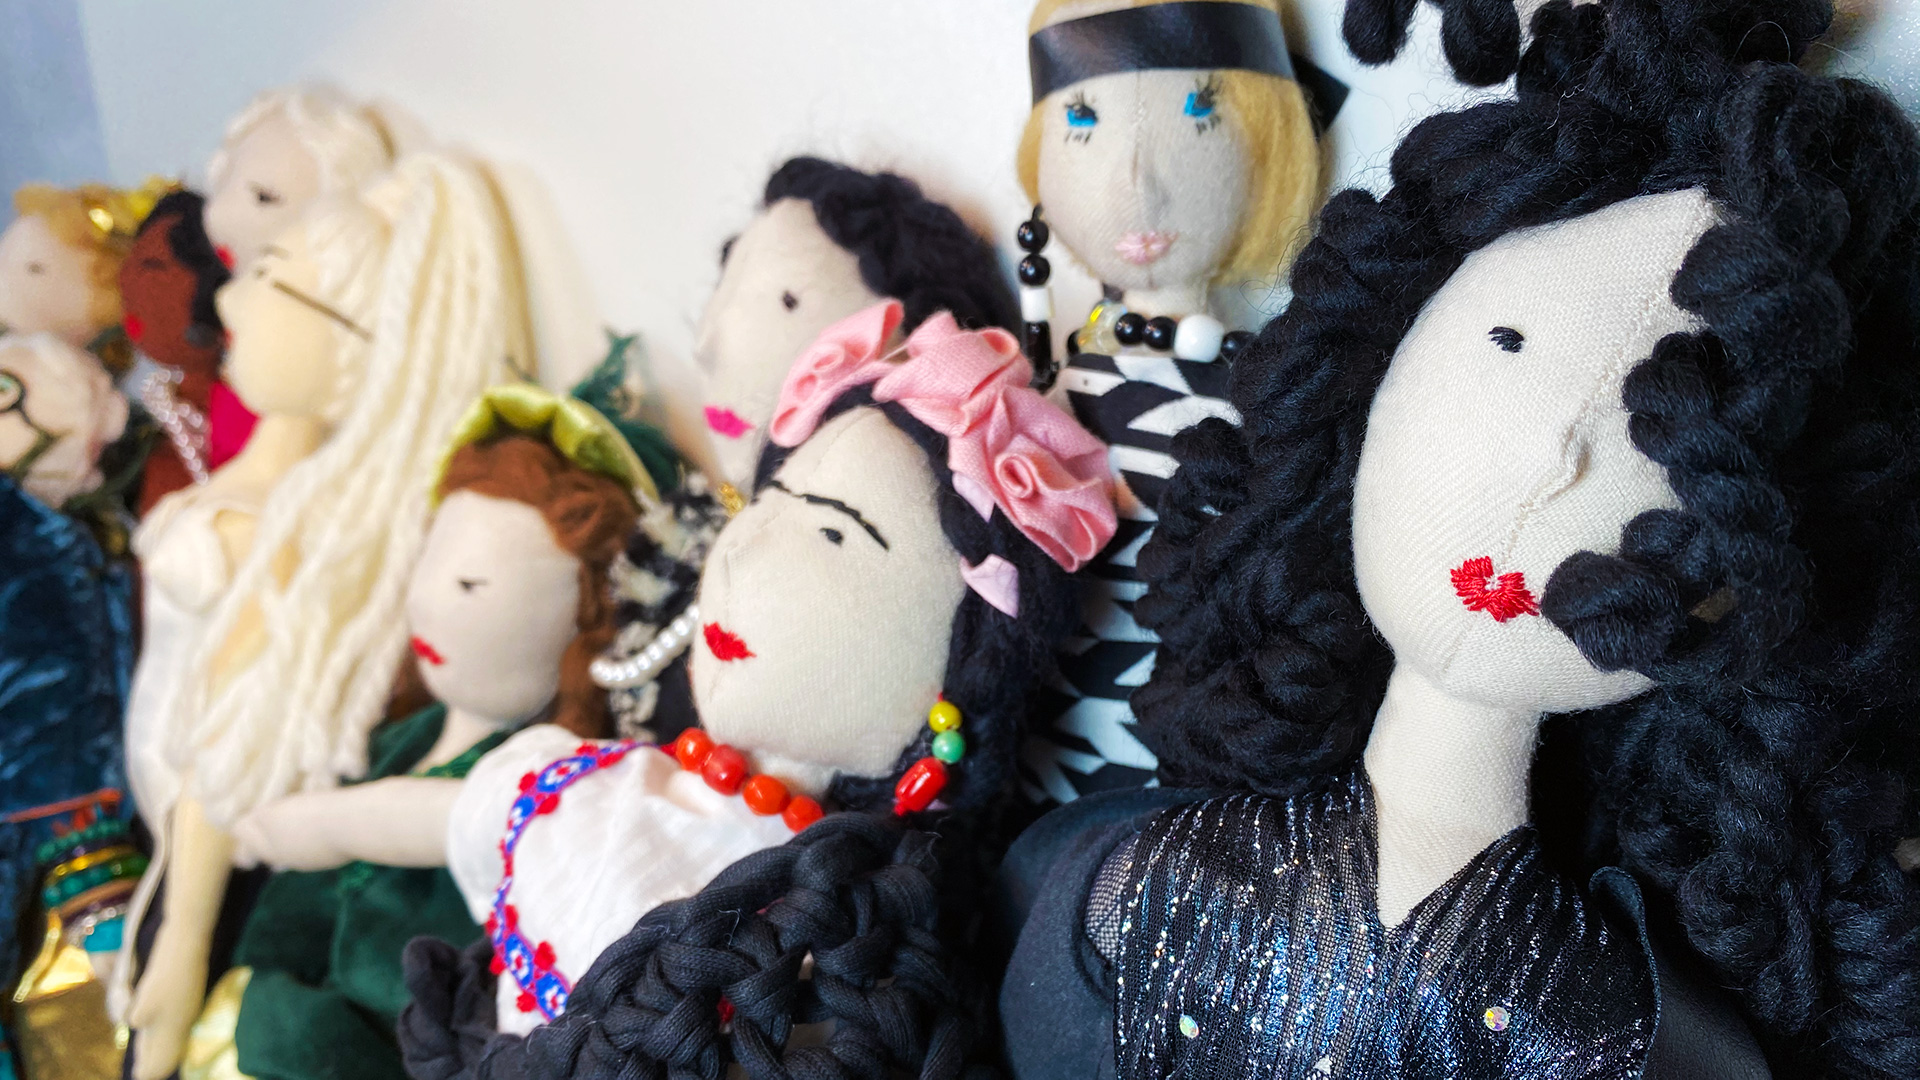 MadameDoll: bambole realizzate a mano in Italia